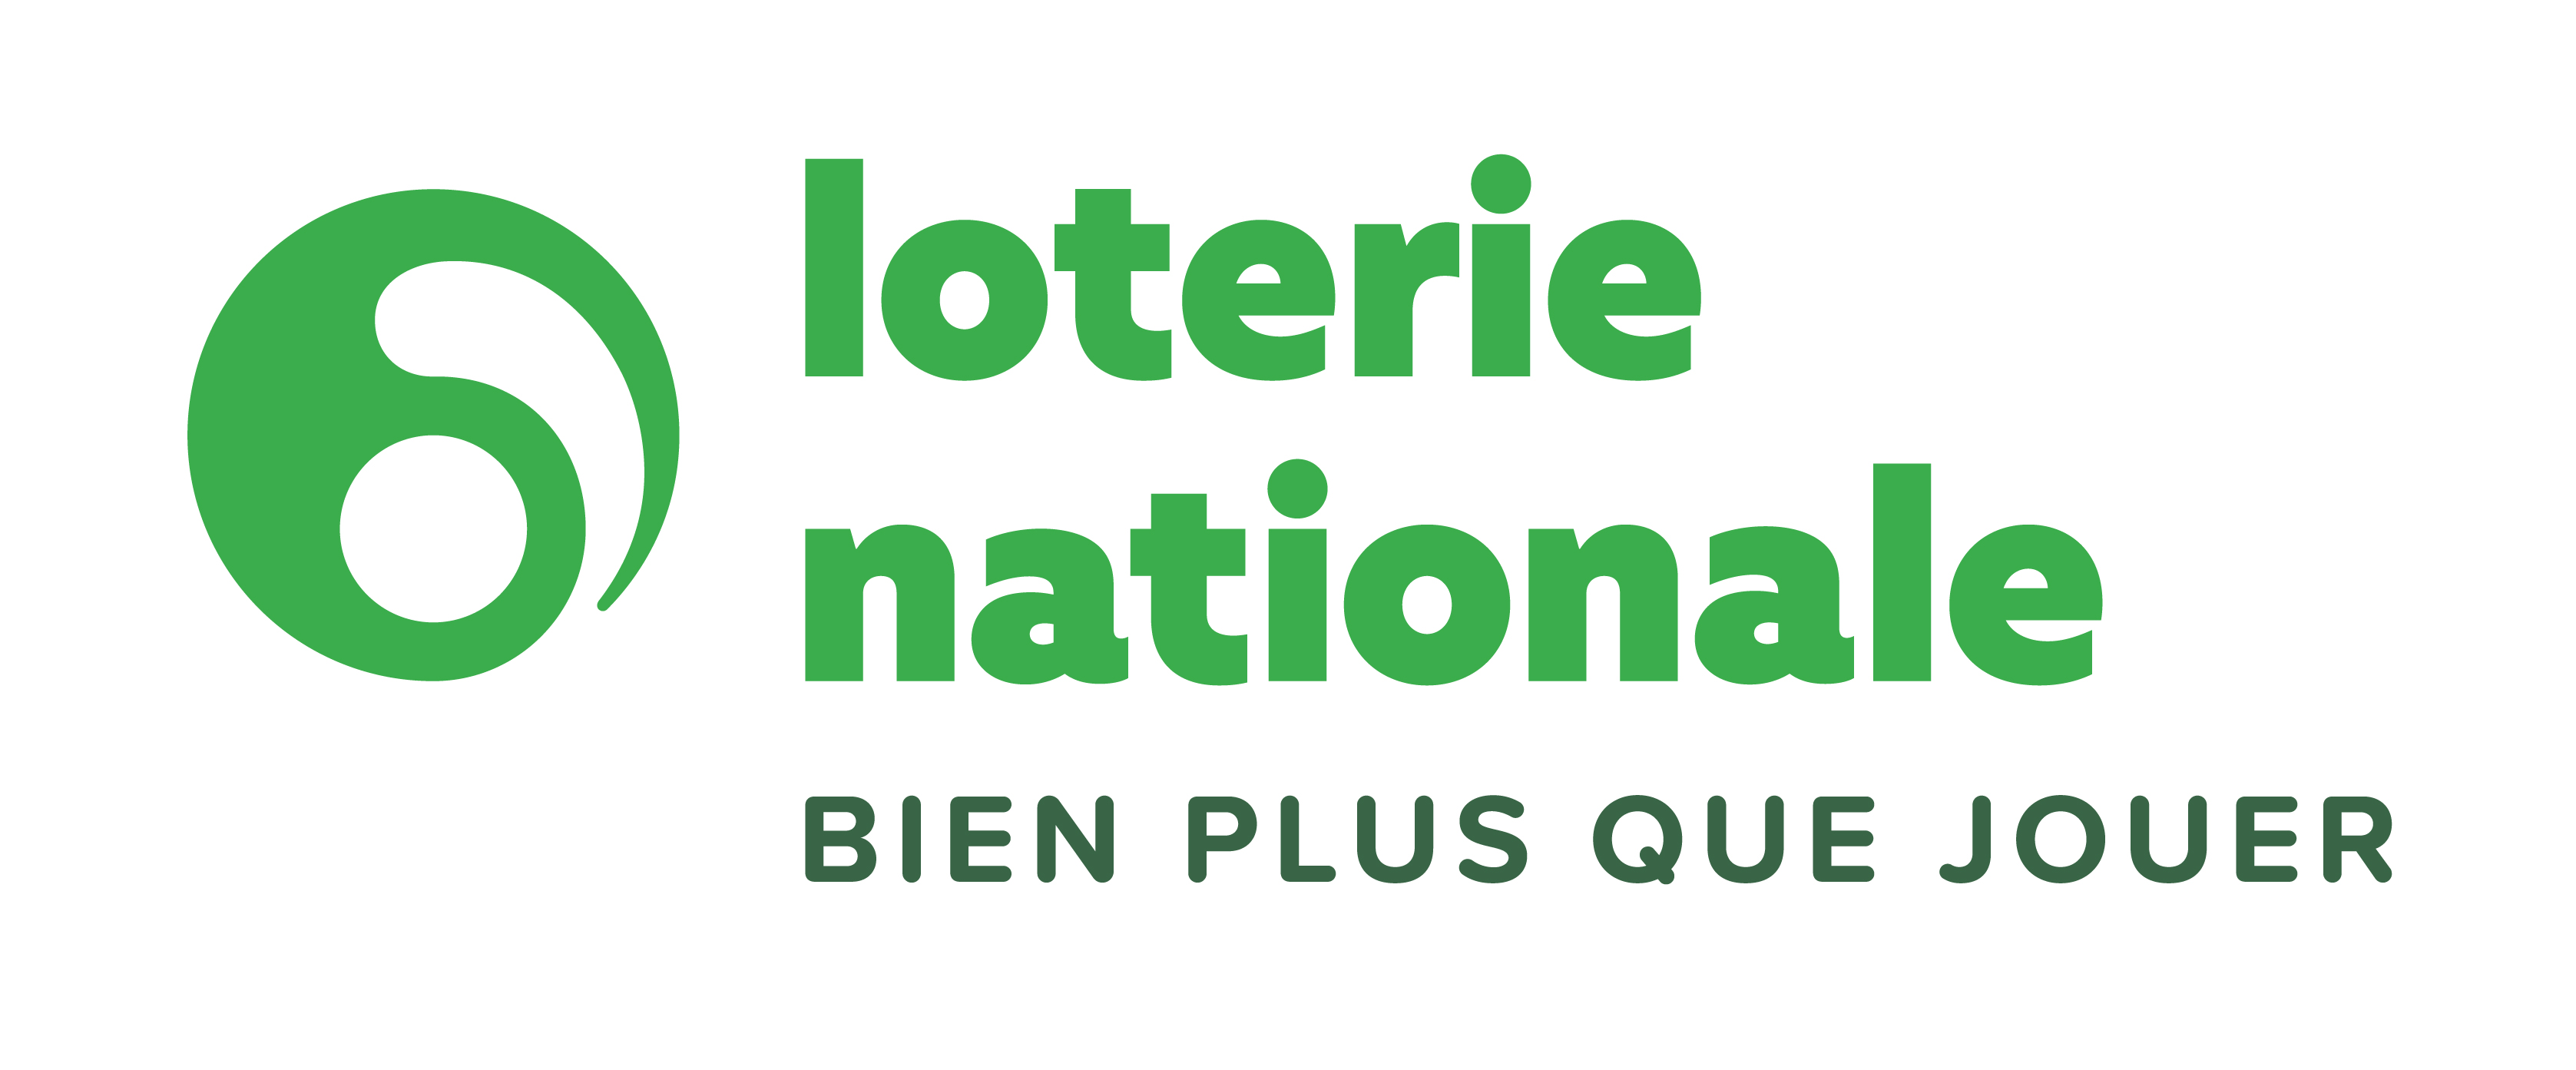 La Loterie Nationale soutient la bibliothèque du Vieux-Liège